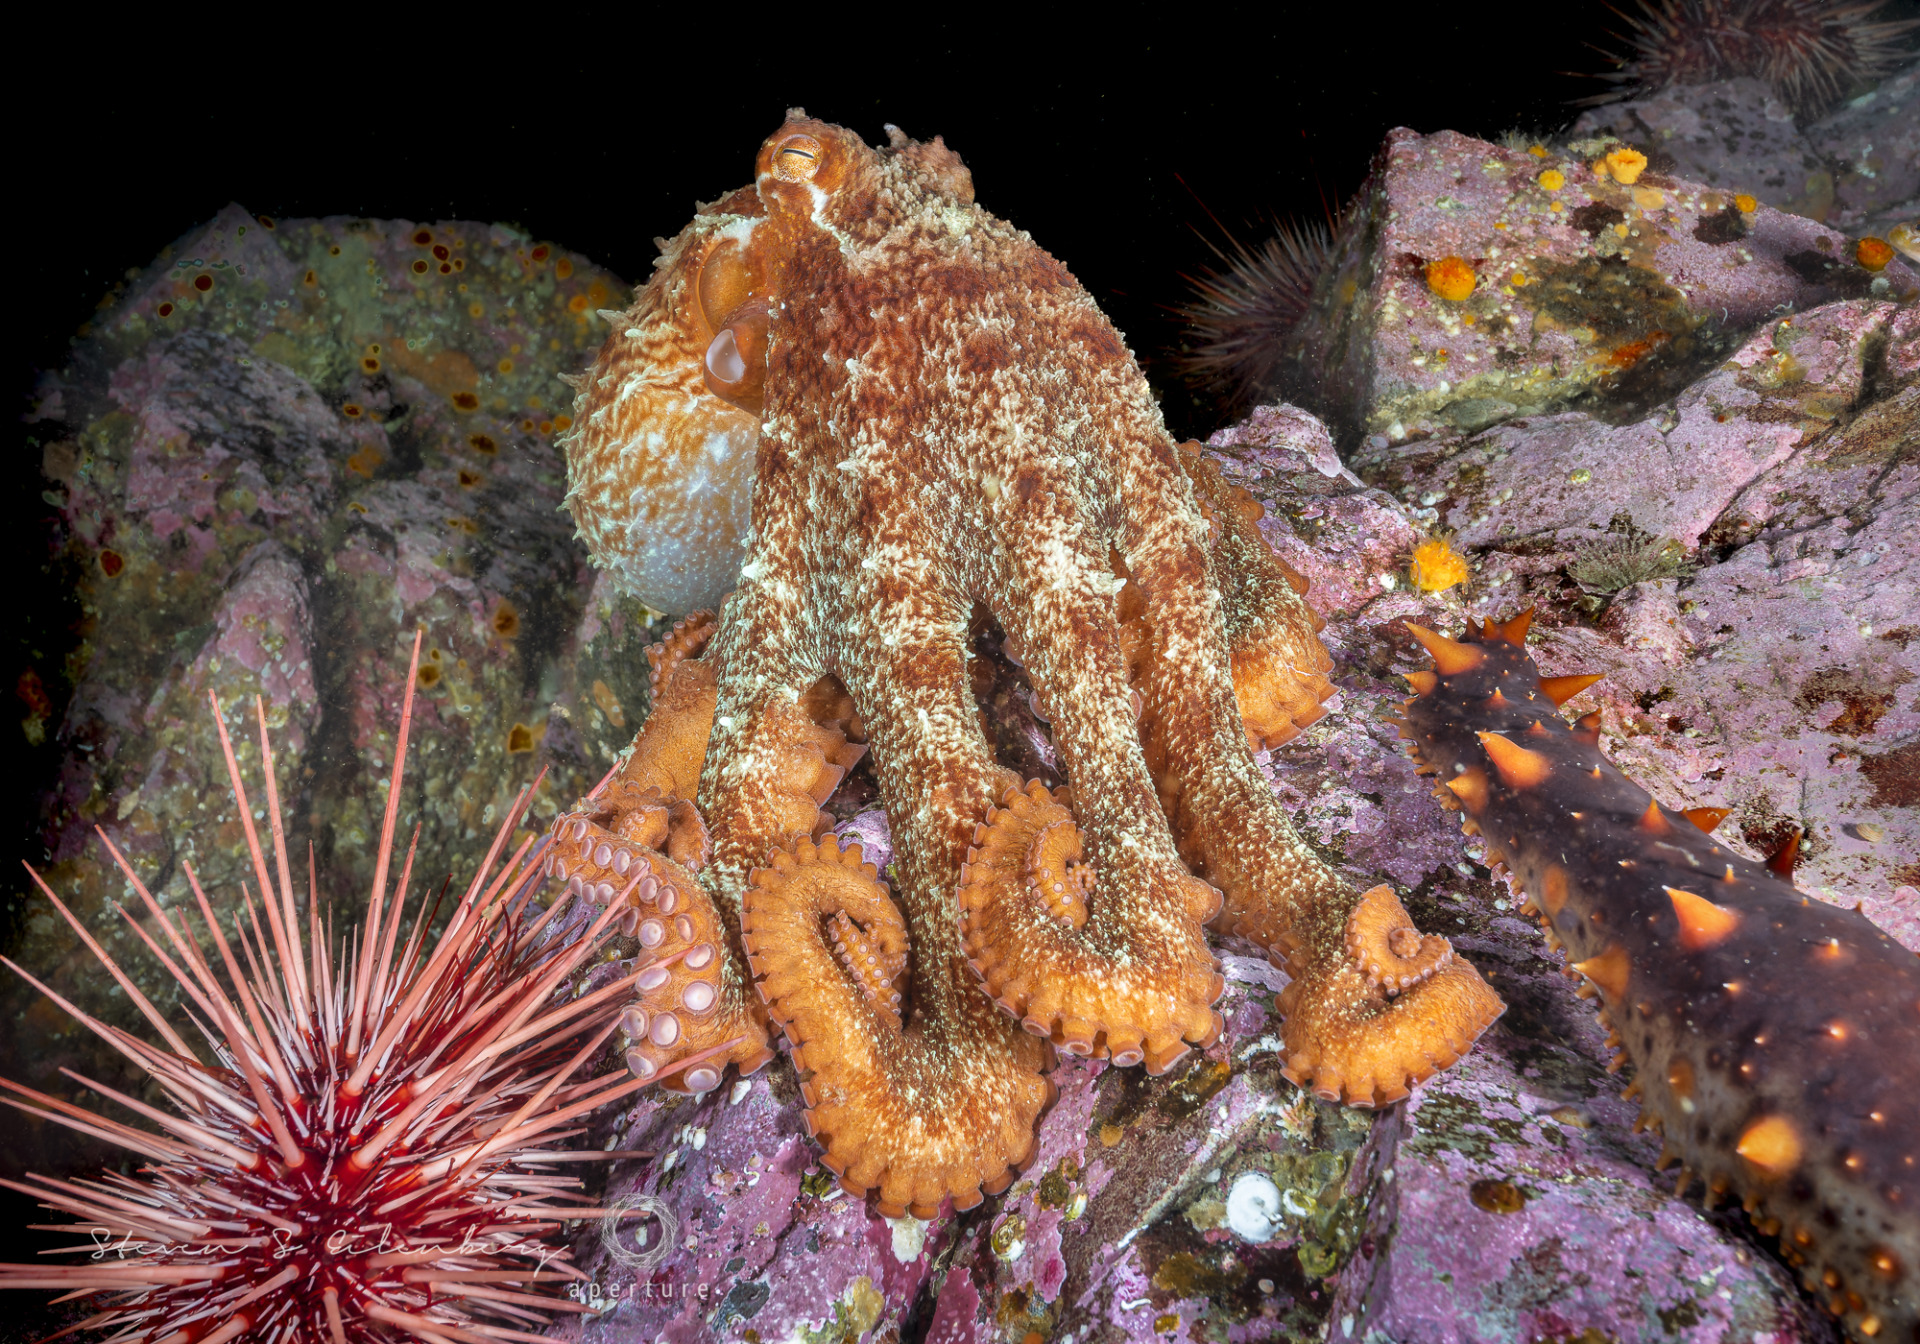 Giant pacific octopus. British Columbia, Canada